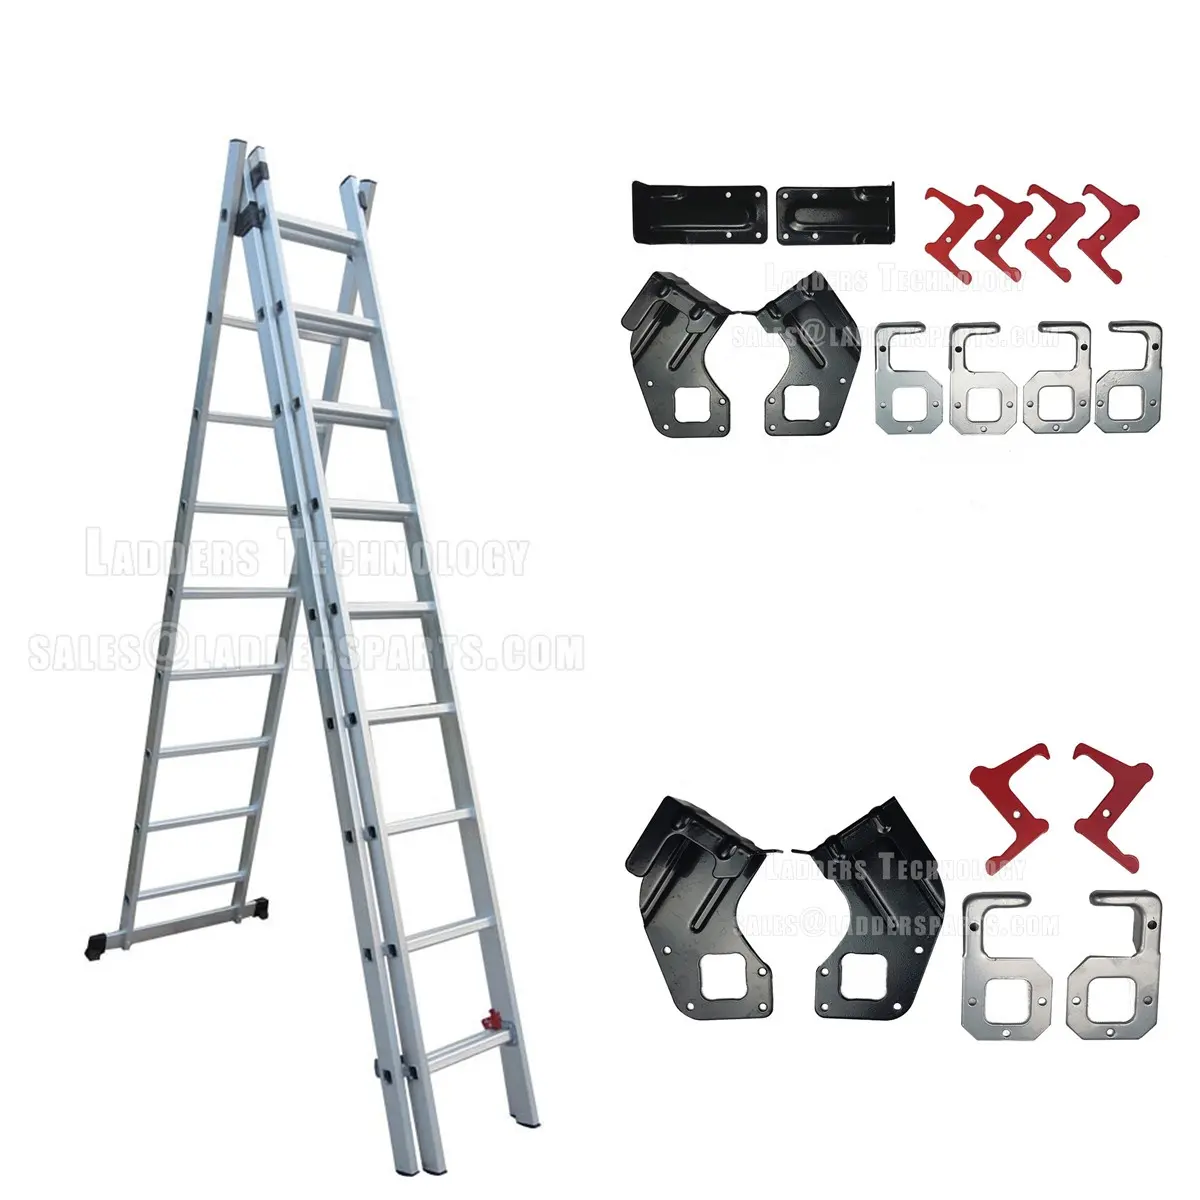 Accesorio de escalera Industrial de aluminio tipo A, 3 secciones Gancho de Metal para escalera de aluminio, bisagras de escalera